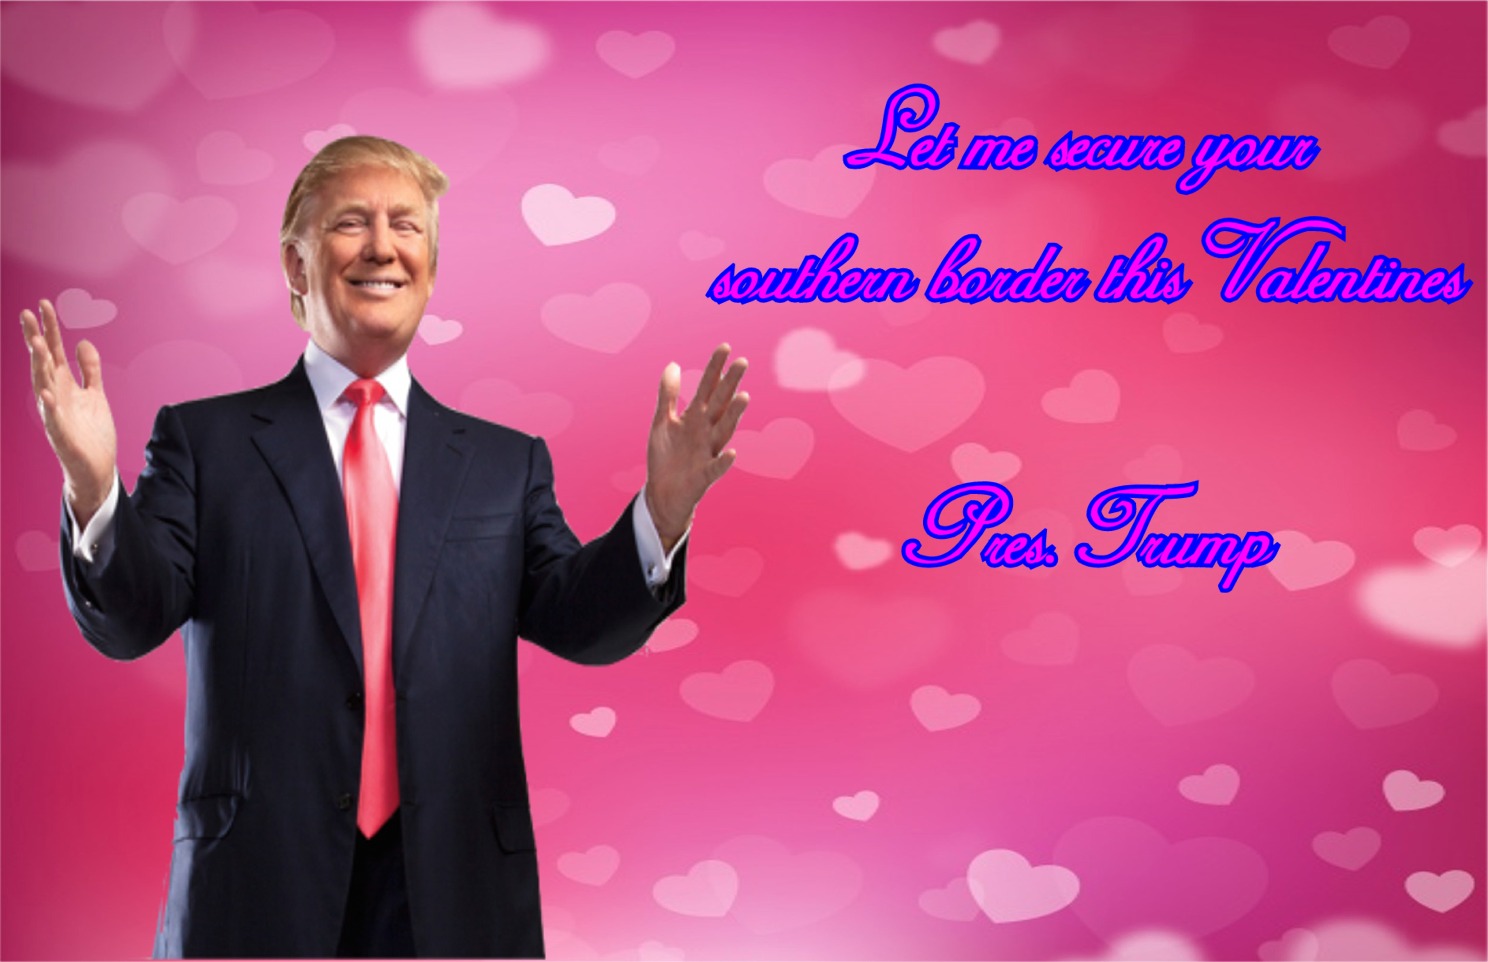 memes - motivational speaker - Let me cecure your watkez Border this Valentines